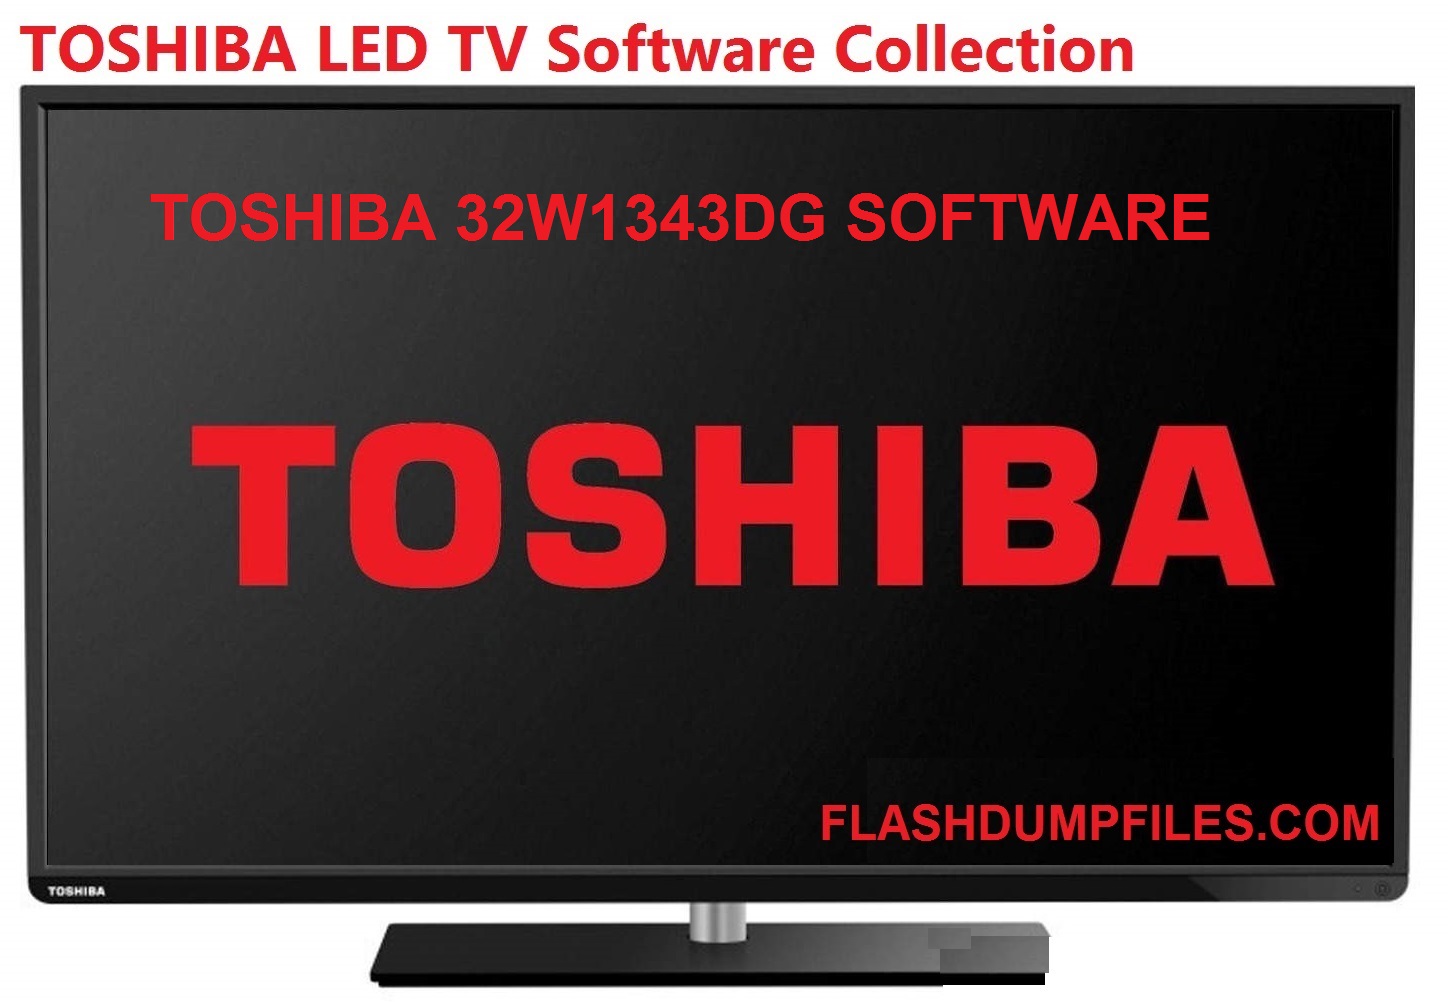 Toshiba 32W1343Dg